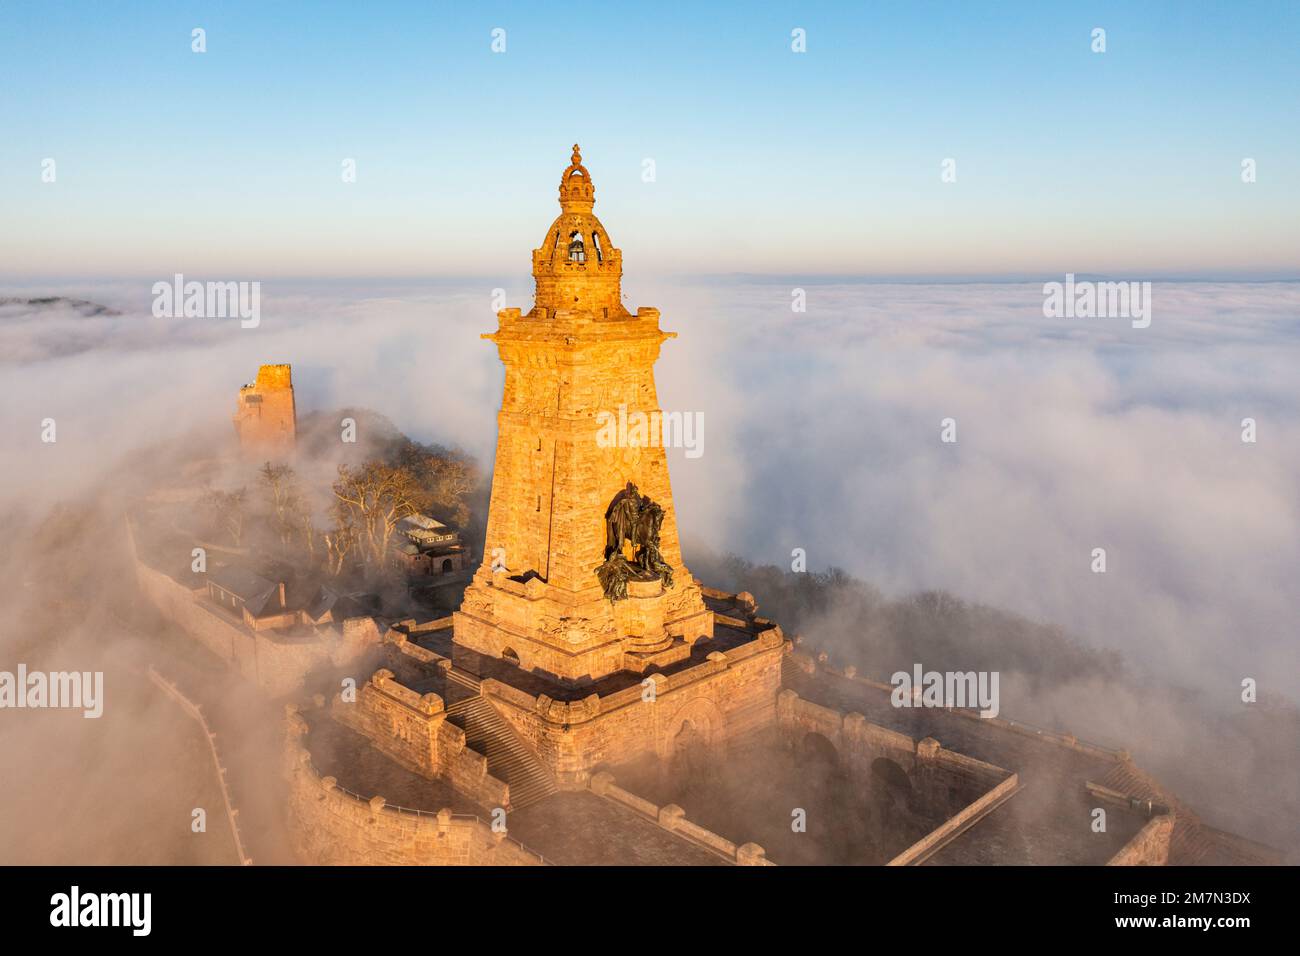 Germania, Turingia, Bad Frankenhausen, Kyffhäuser monumento sorge da un mare di nuvole, panoramica, luce del mattino, foto aeree Foto Stock